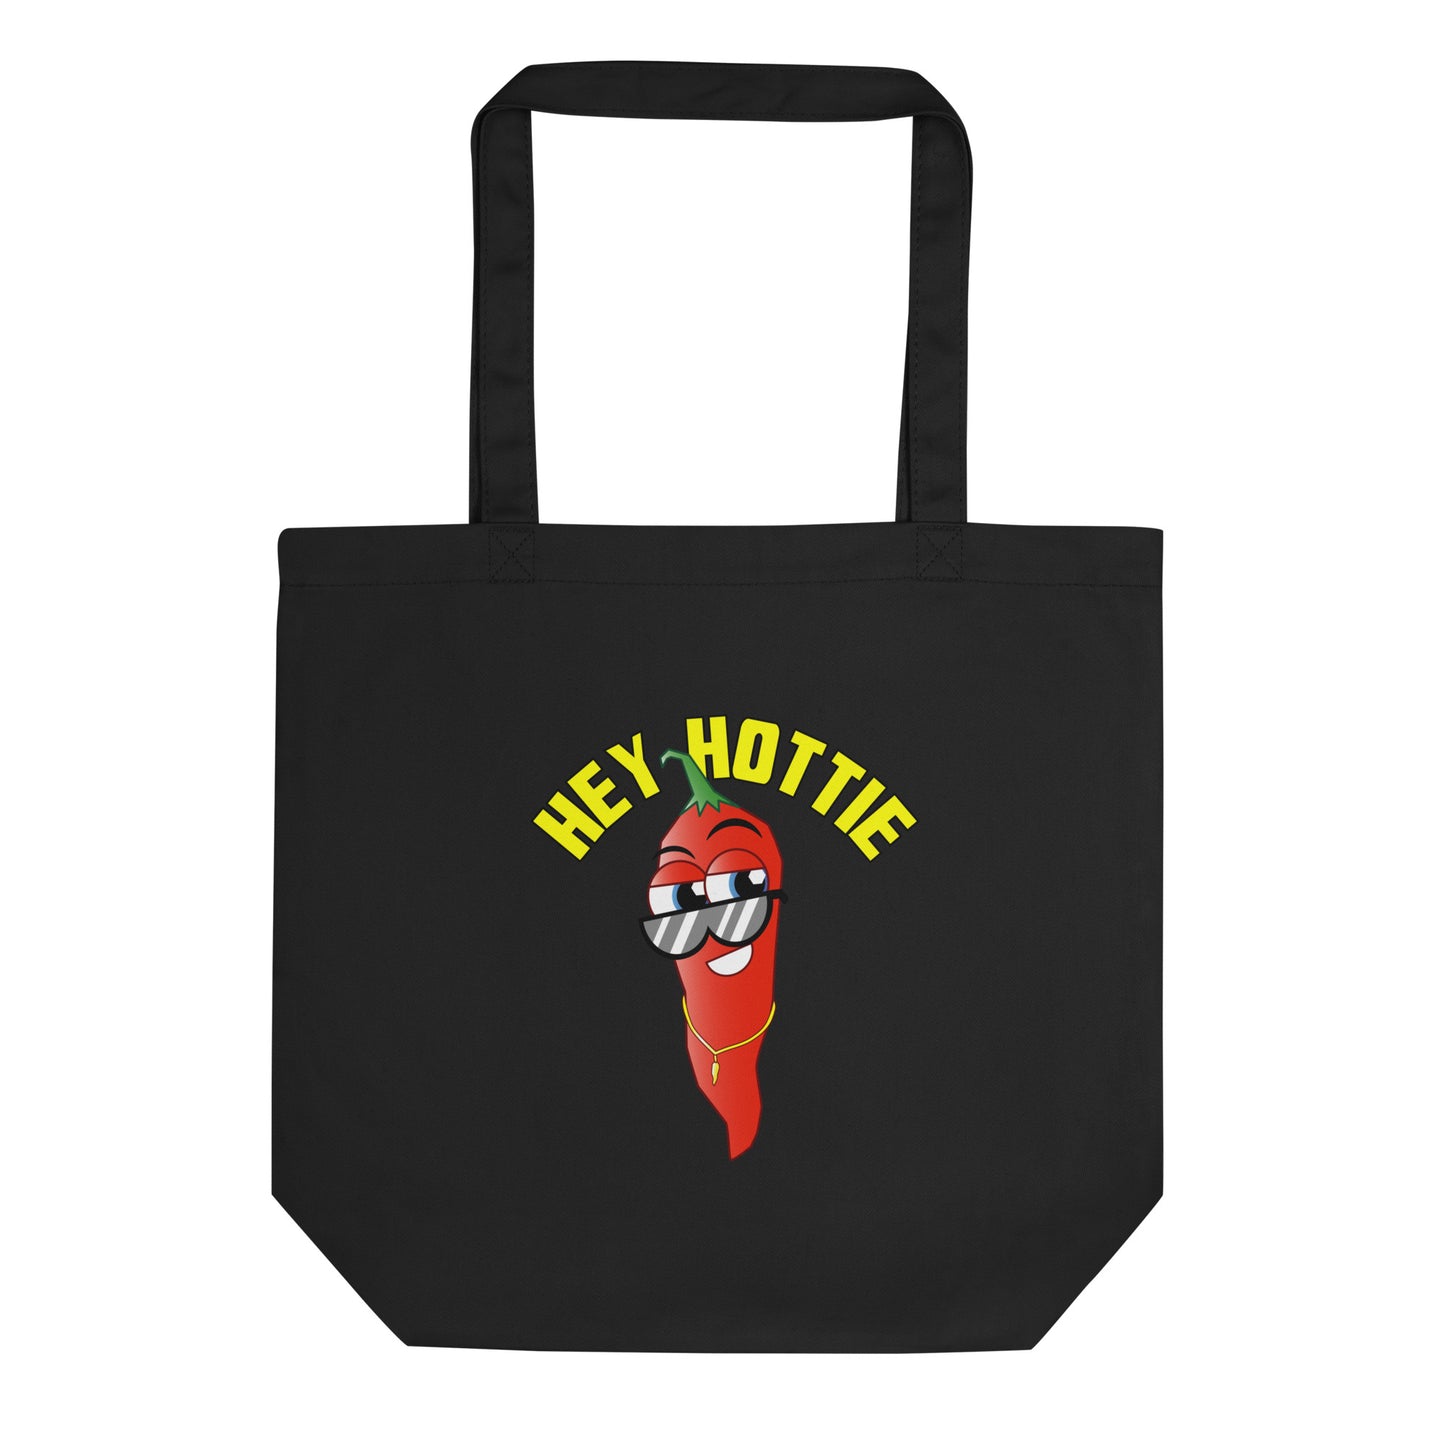 Hey Hottie Eco Tote Bag